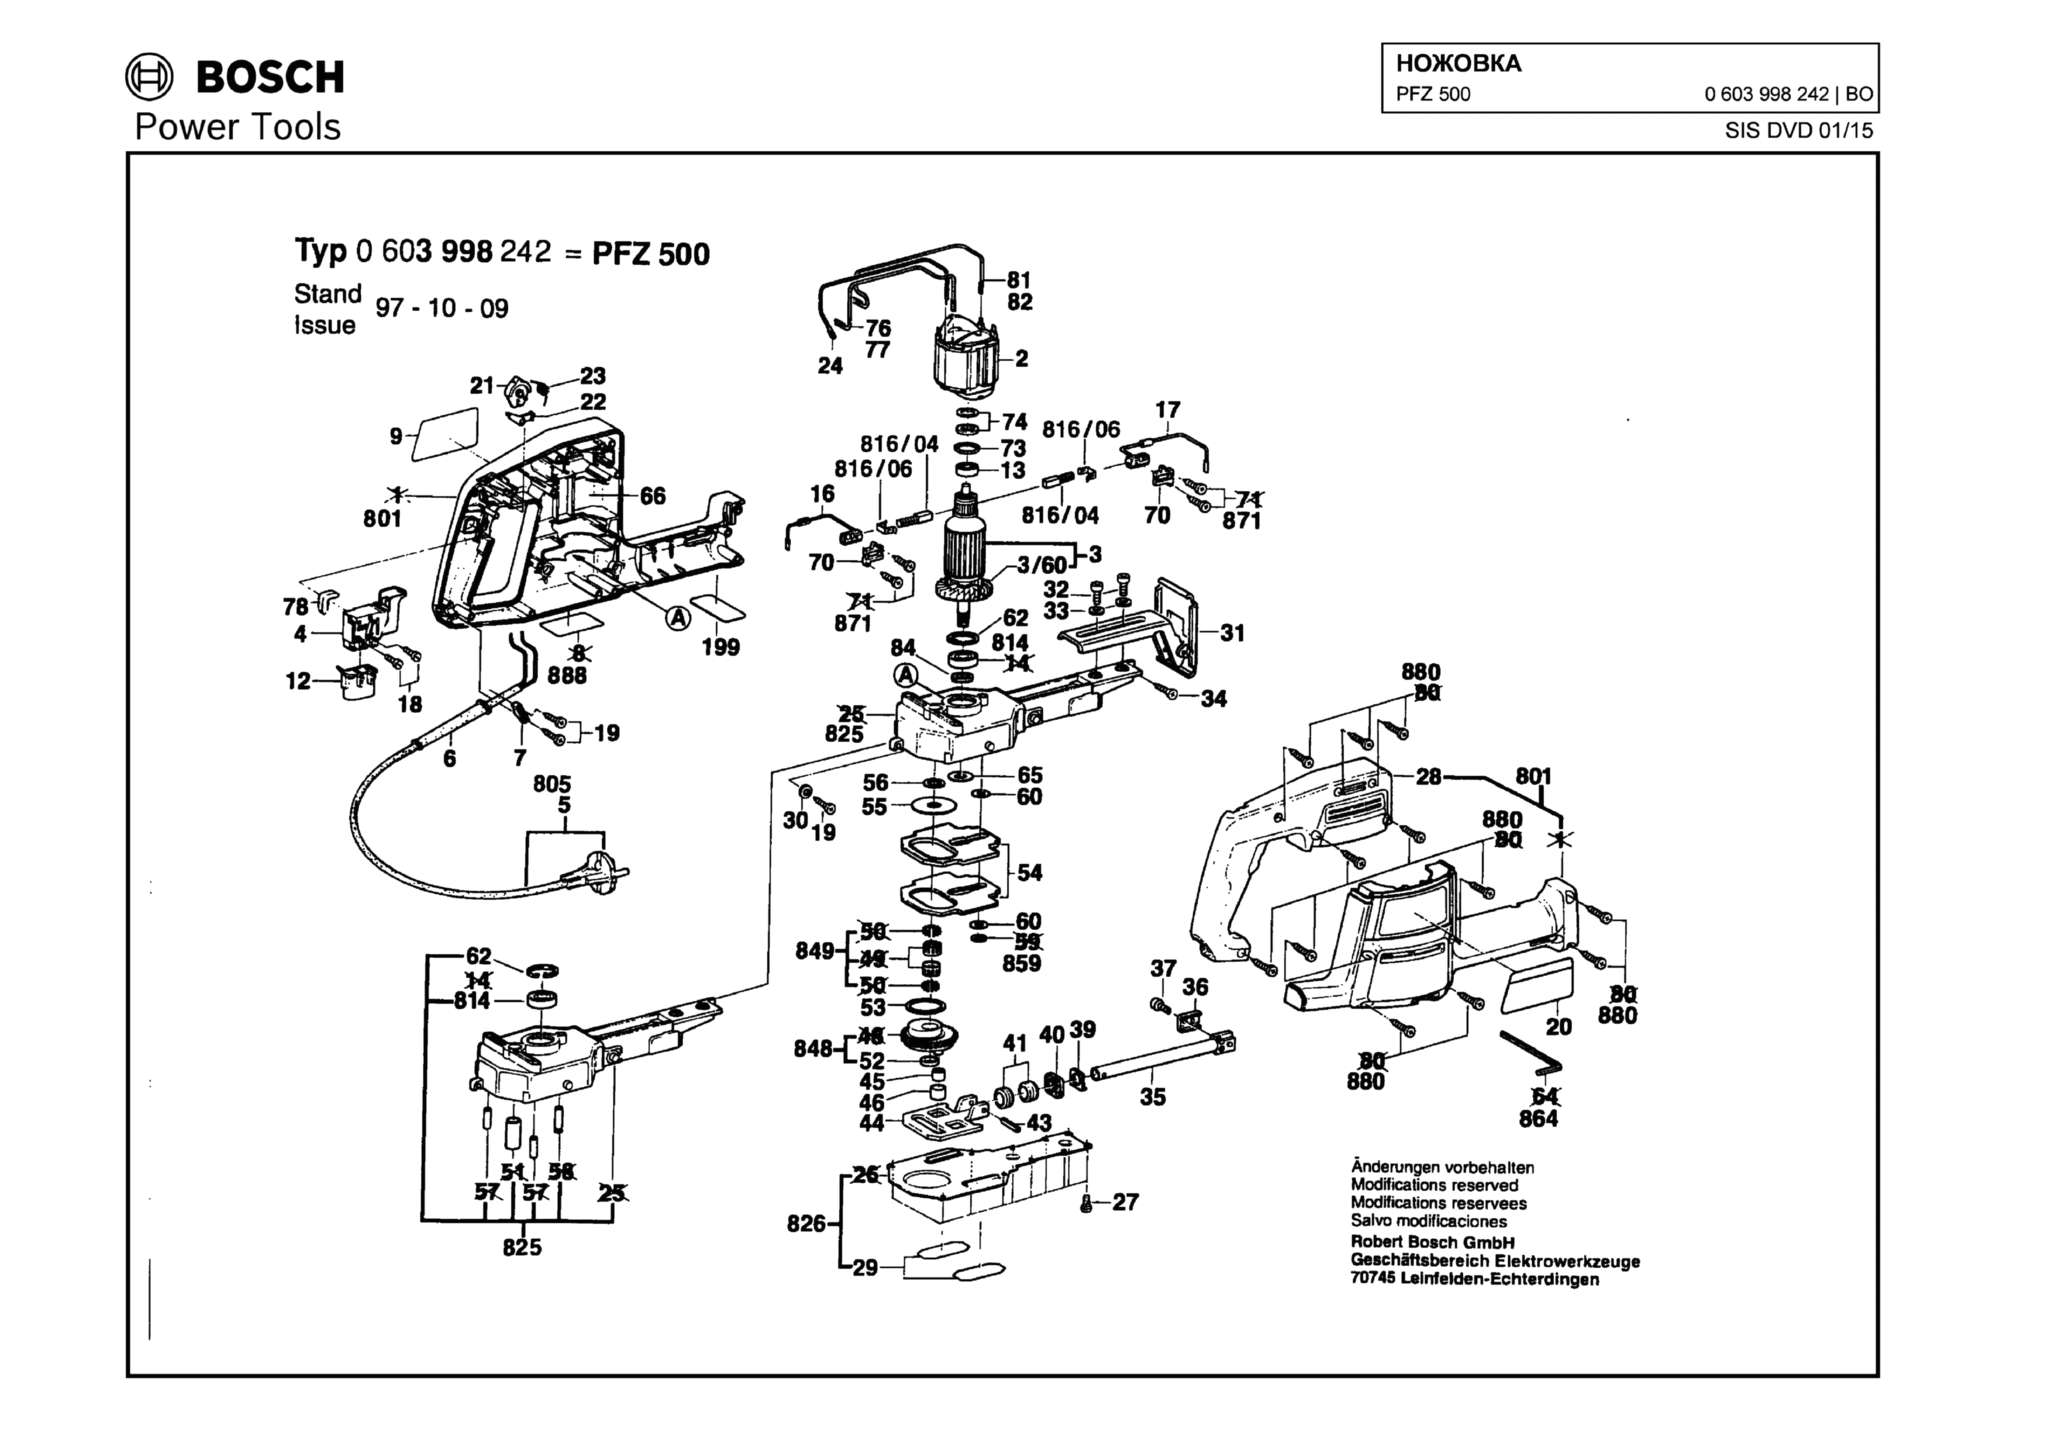 Запчасти, схема и деталировка Bosch PFZ 500 (ТИП 0603998242)